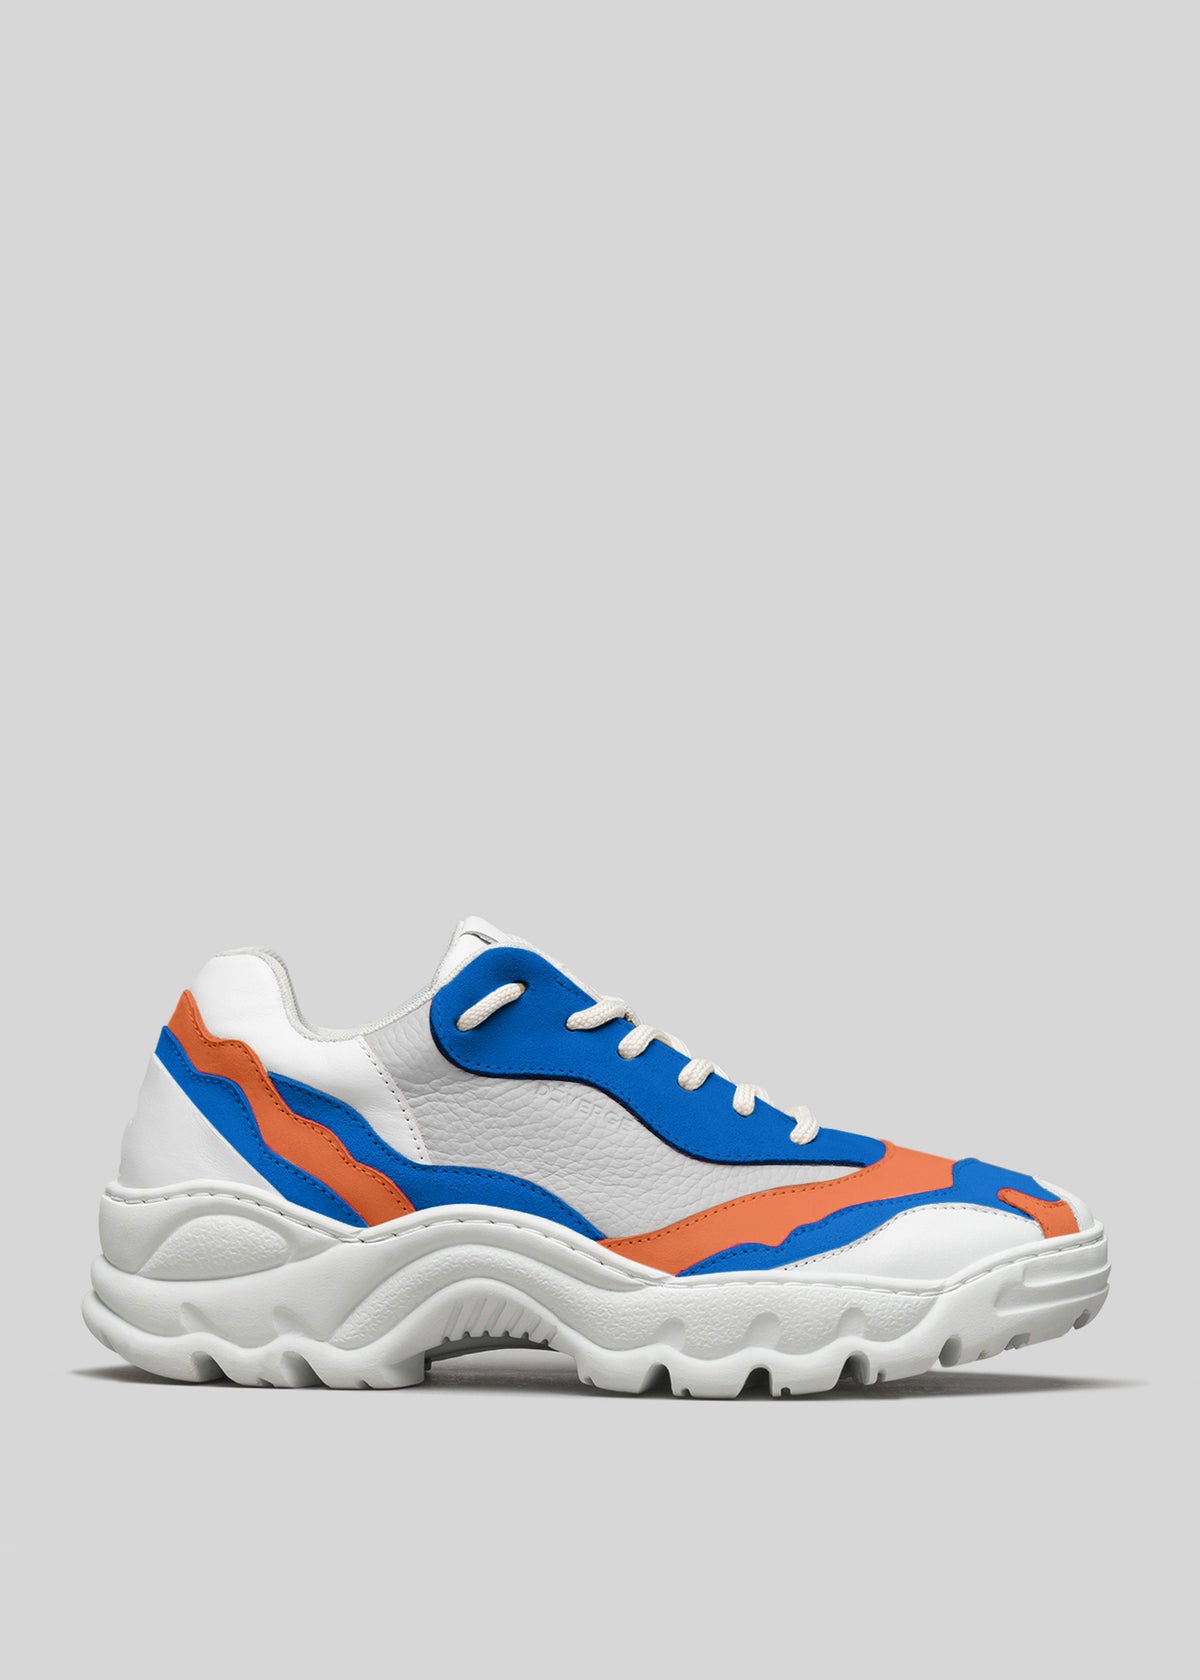 Sneaker bassa V18 Leather Color Mix Electric Blue con pannelli blu e arancioni e suola robusta e ondulata, su sfondo grigio chiaro.